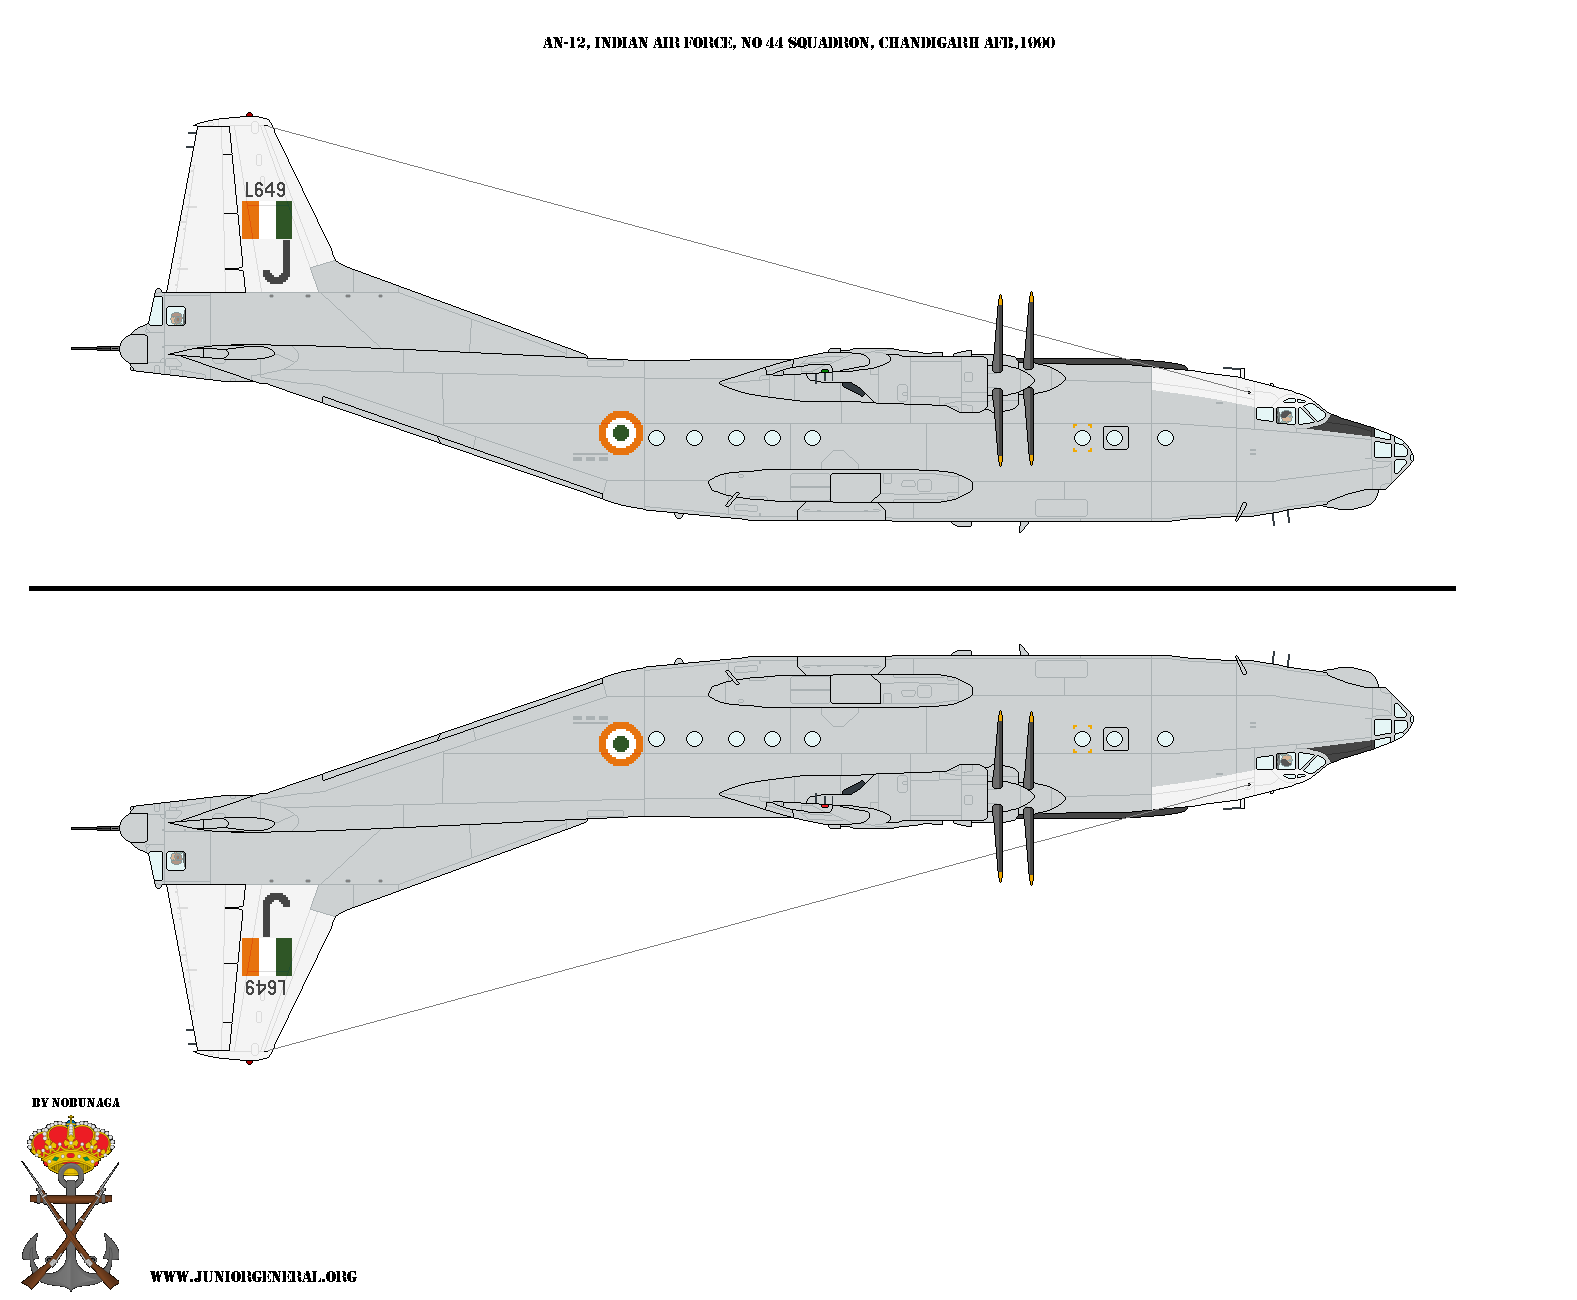 Indian AN-12